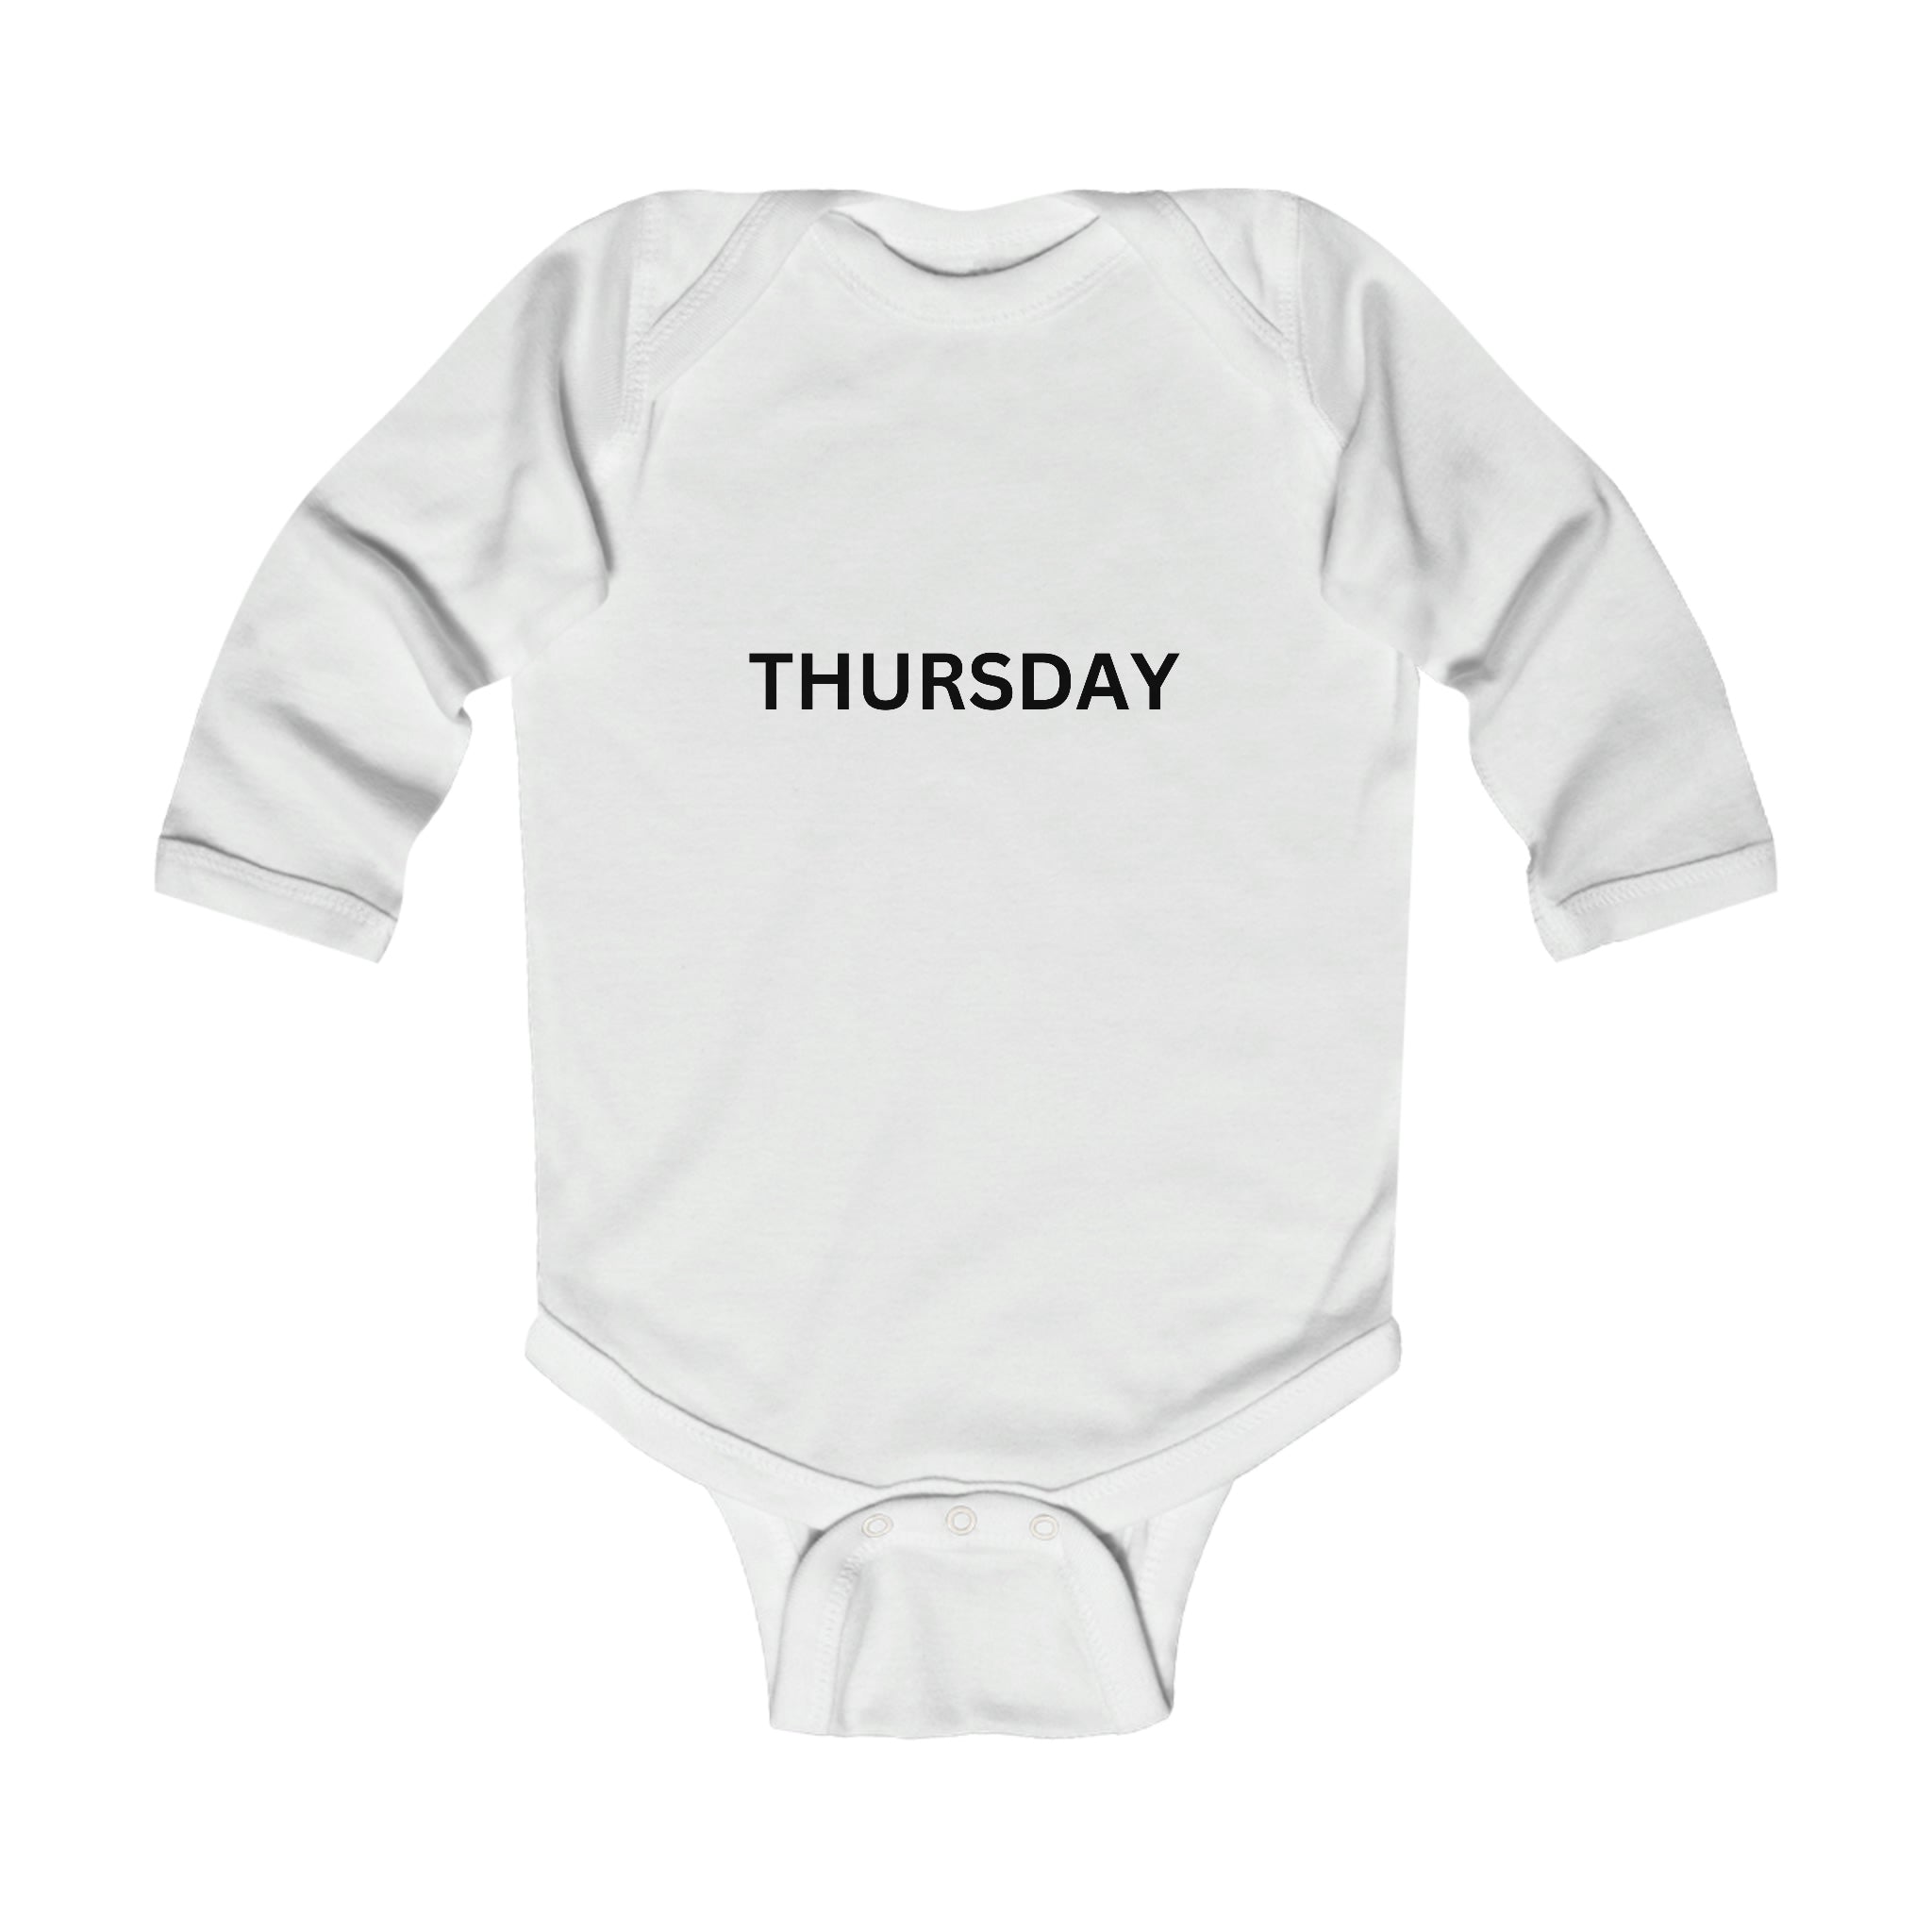 Thursday Long Sleeve Baby Bodysuit